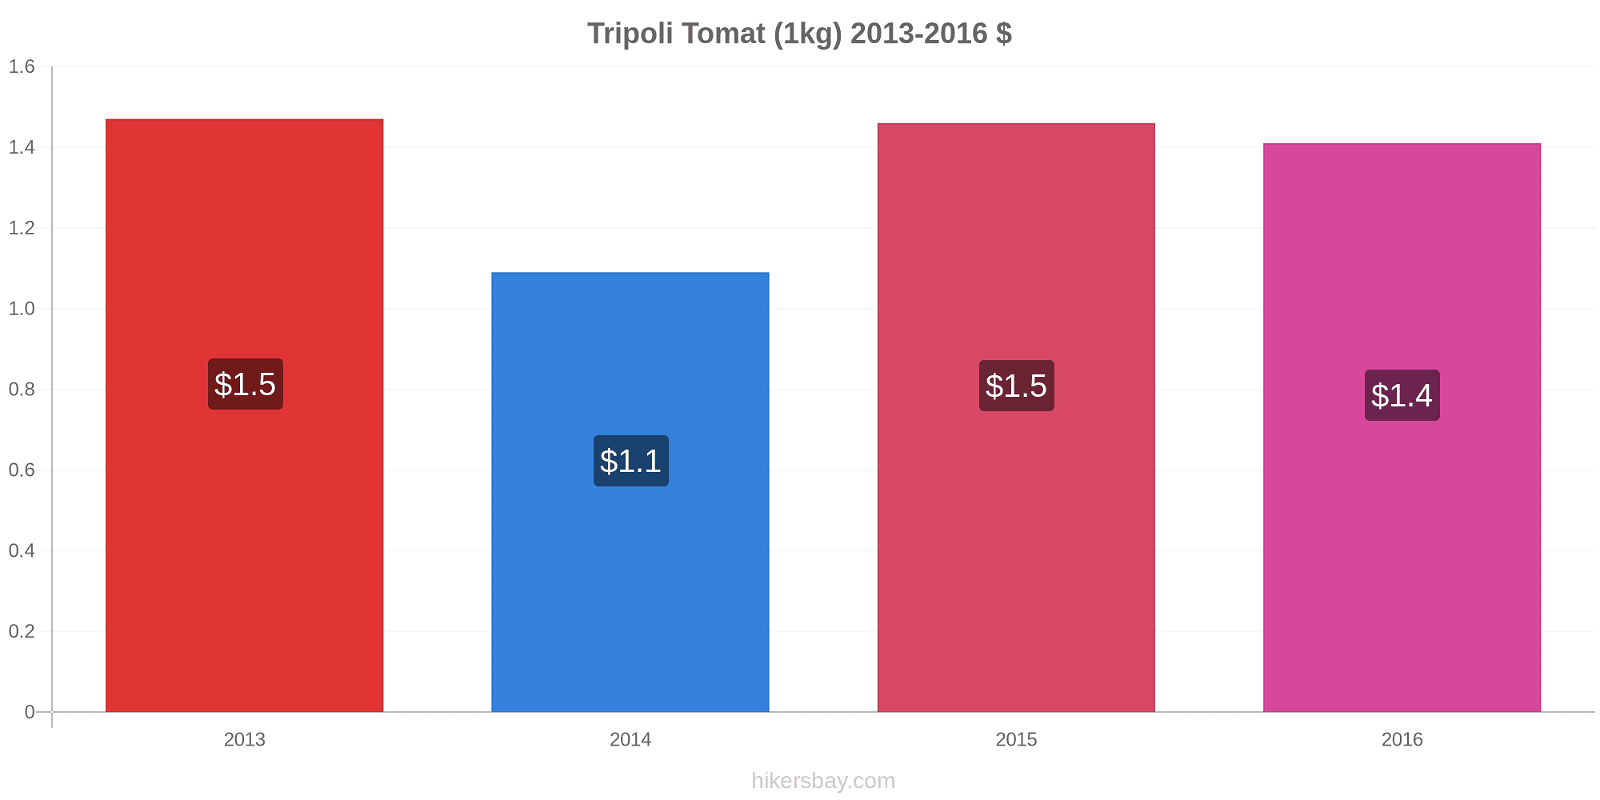 Tripoli prisændringer Tomat (1kg) hikersbay.com